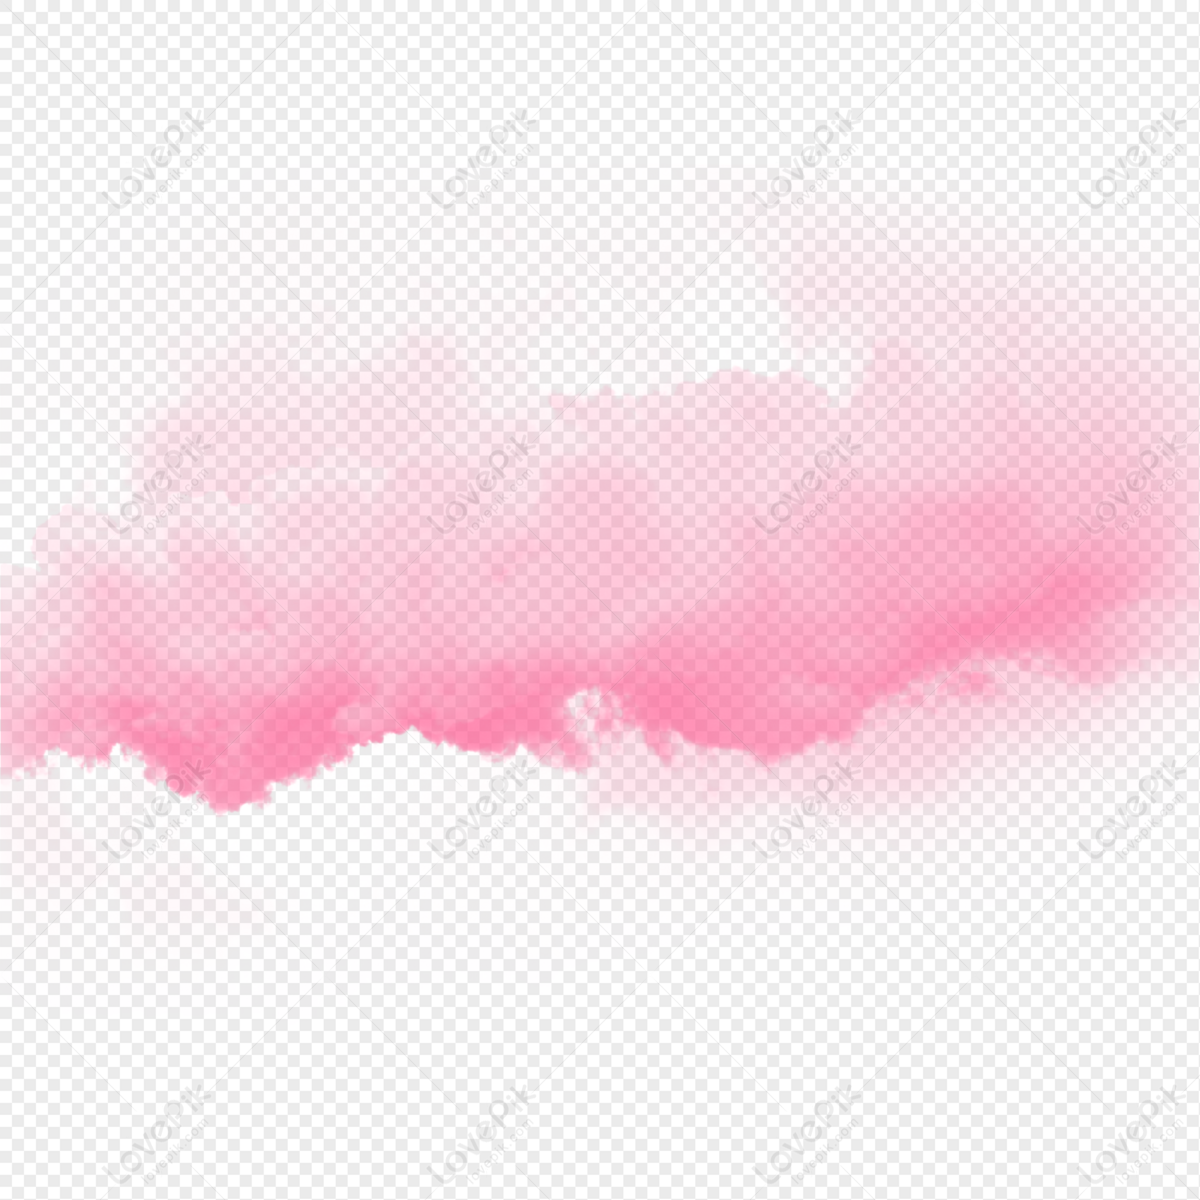 Tận hưởng khoảnh khắc lãng mạn và tưởng tượng hình ảnh chính mình đang bay trên những đám mây hồng tuyệt đẹp. Với Pink Cloud PNG, bạn sẽ nhận được niềm vui và sự thư giãn mỗi khi nhìn vào bức ảnh này.